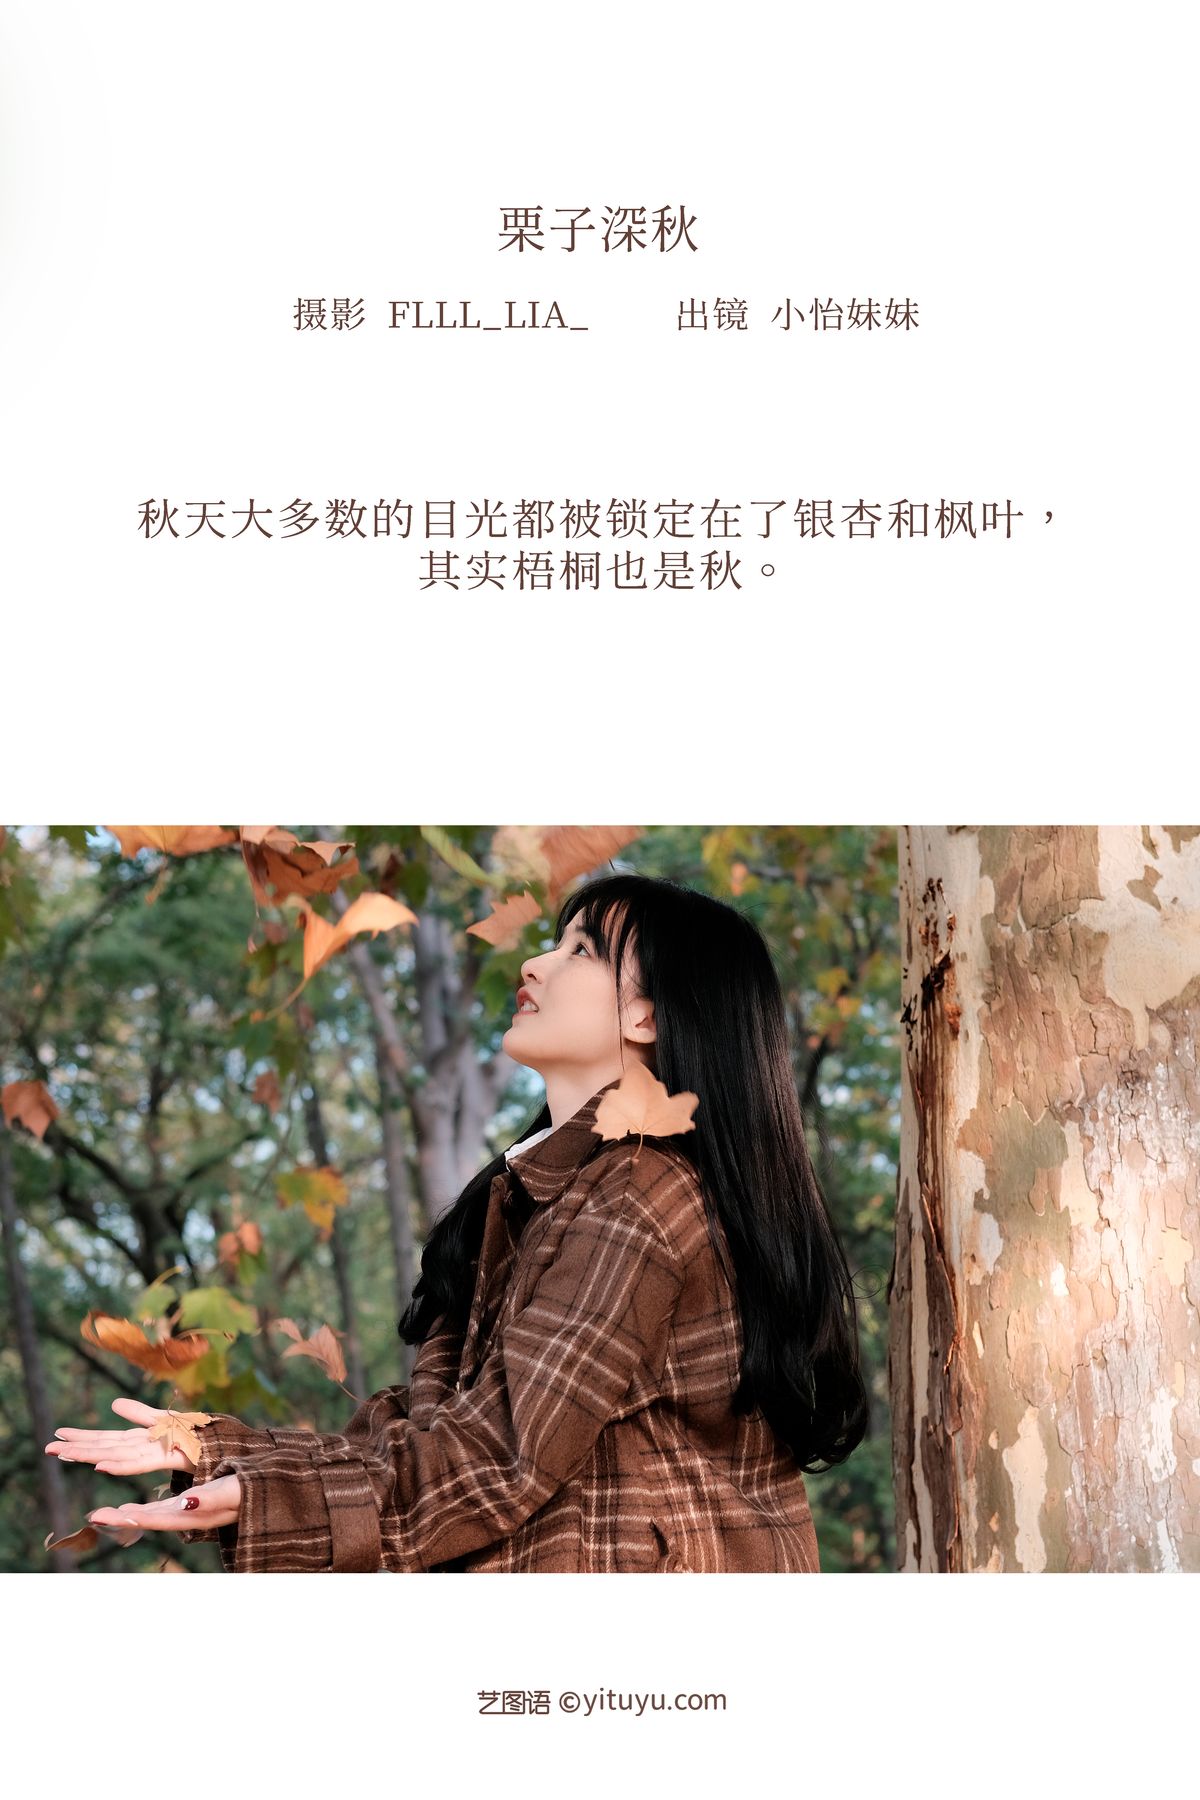 YiTuYu艺图语 Vol 3291 Xiao Yi Mei Mei Cute 0001 2079401204.jpg